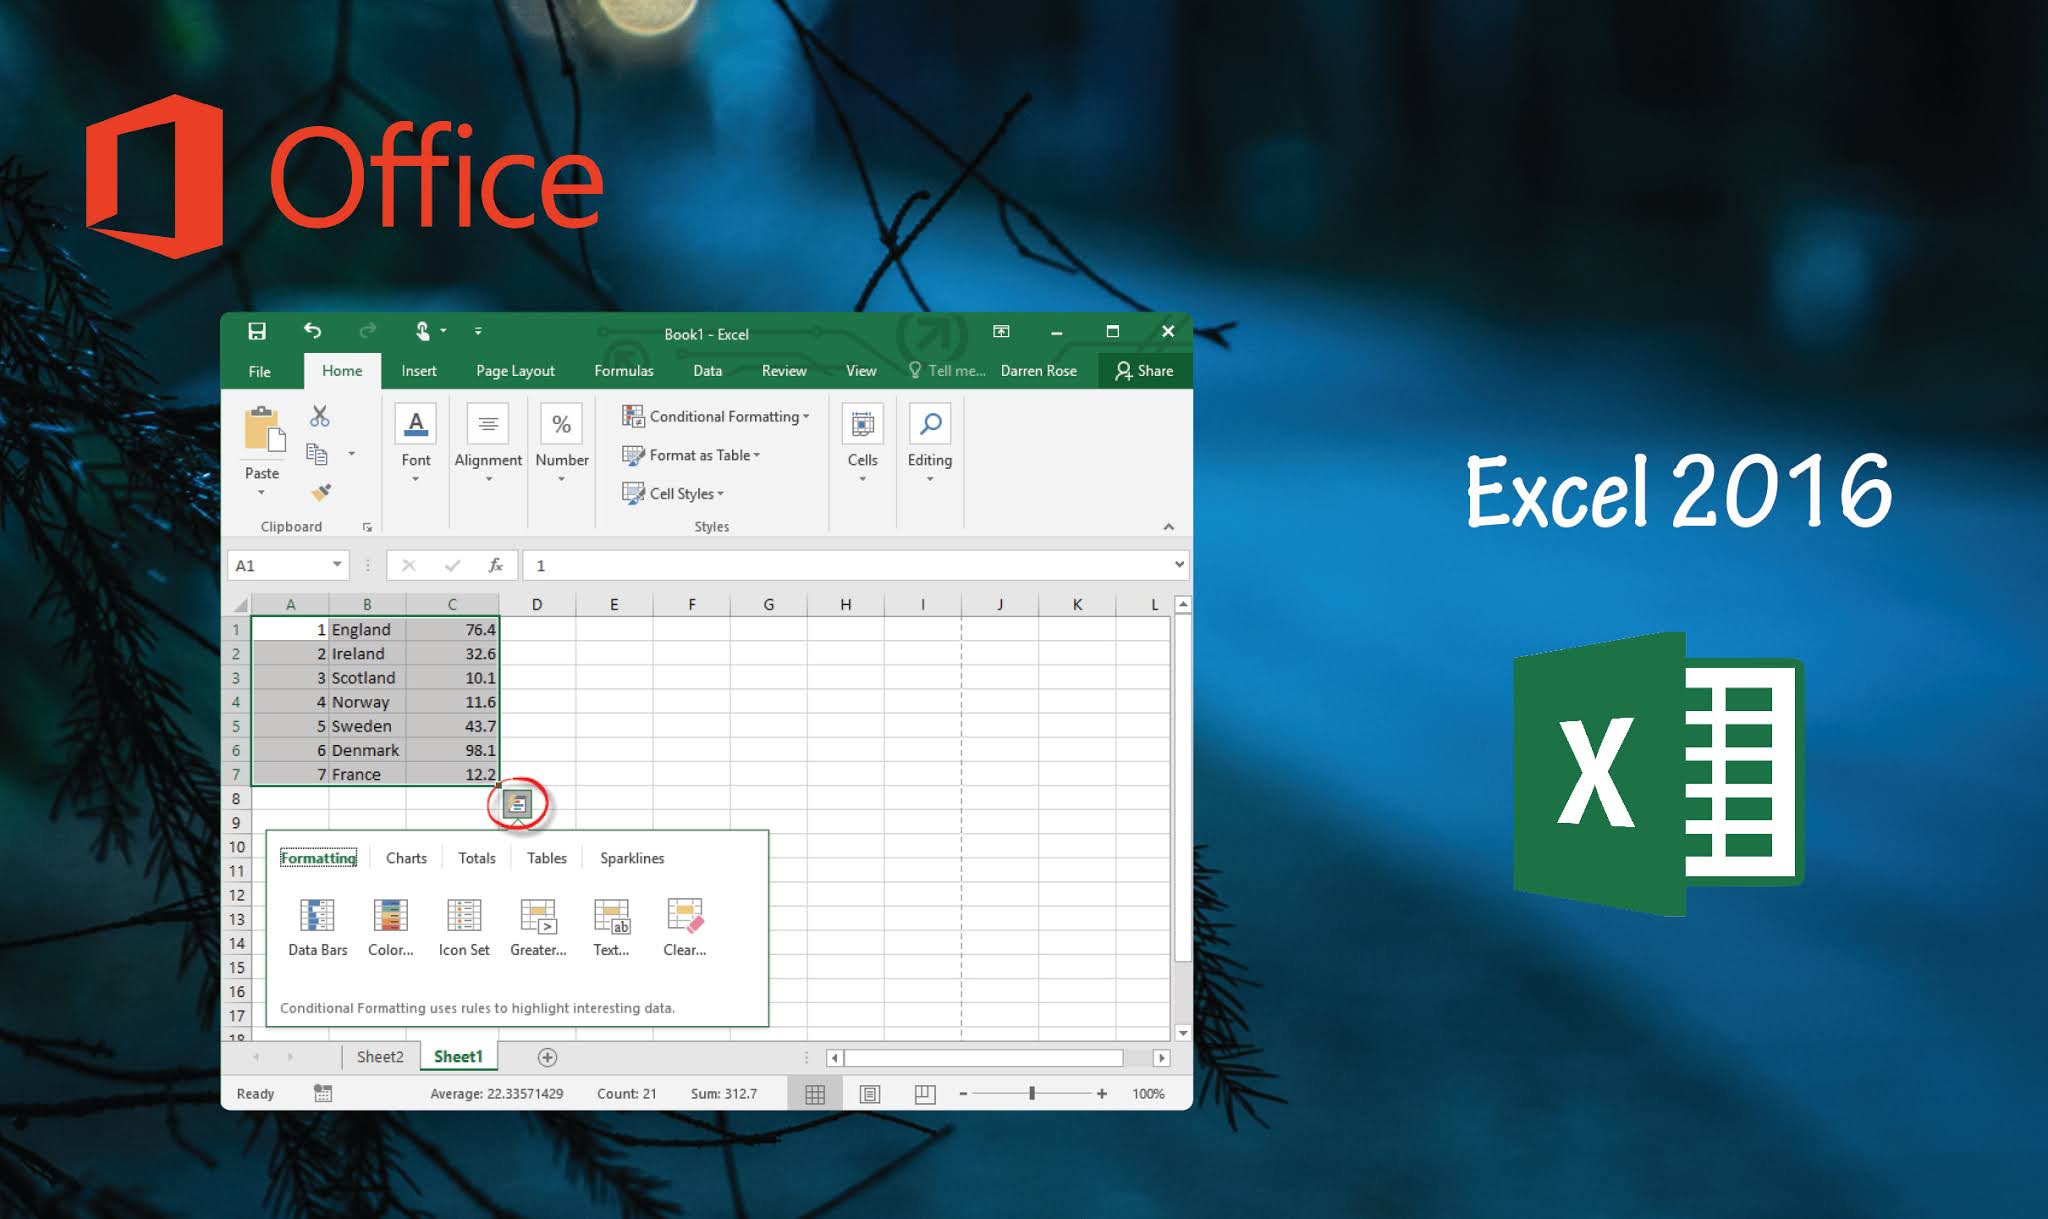 New functionalities in Excel 2016